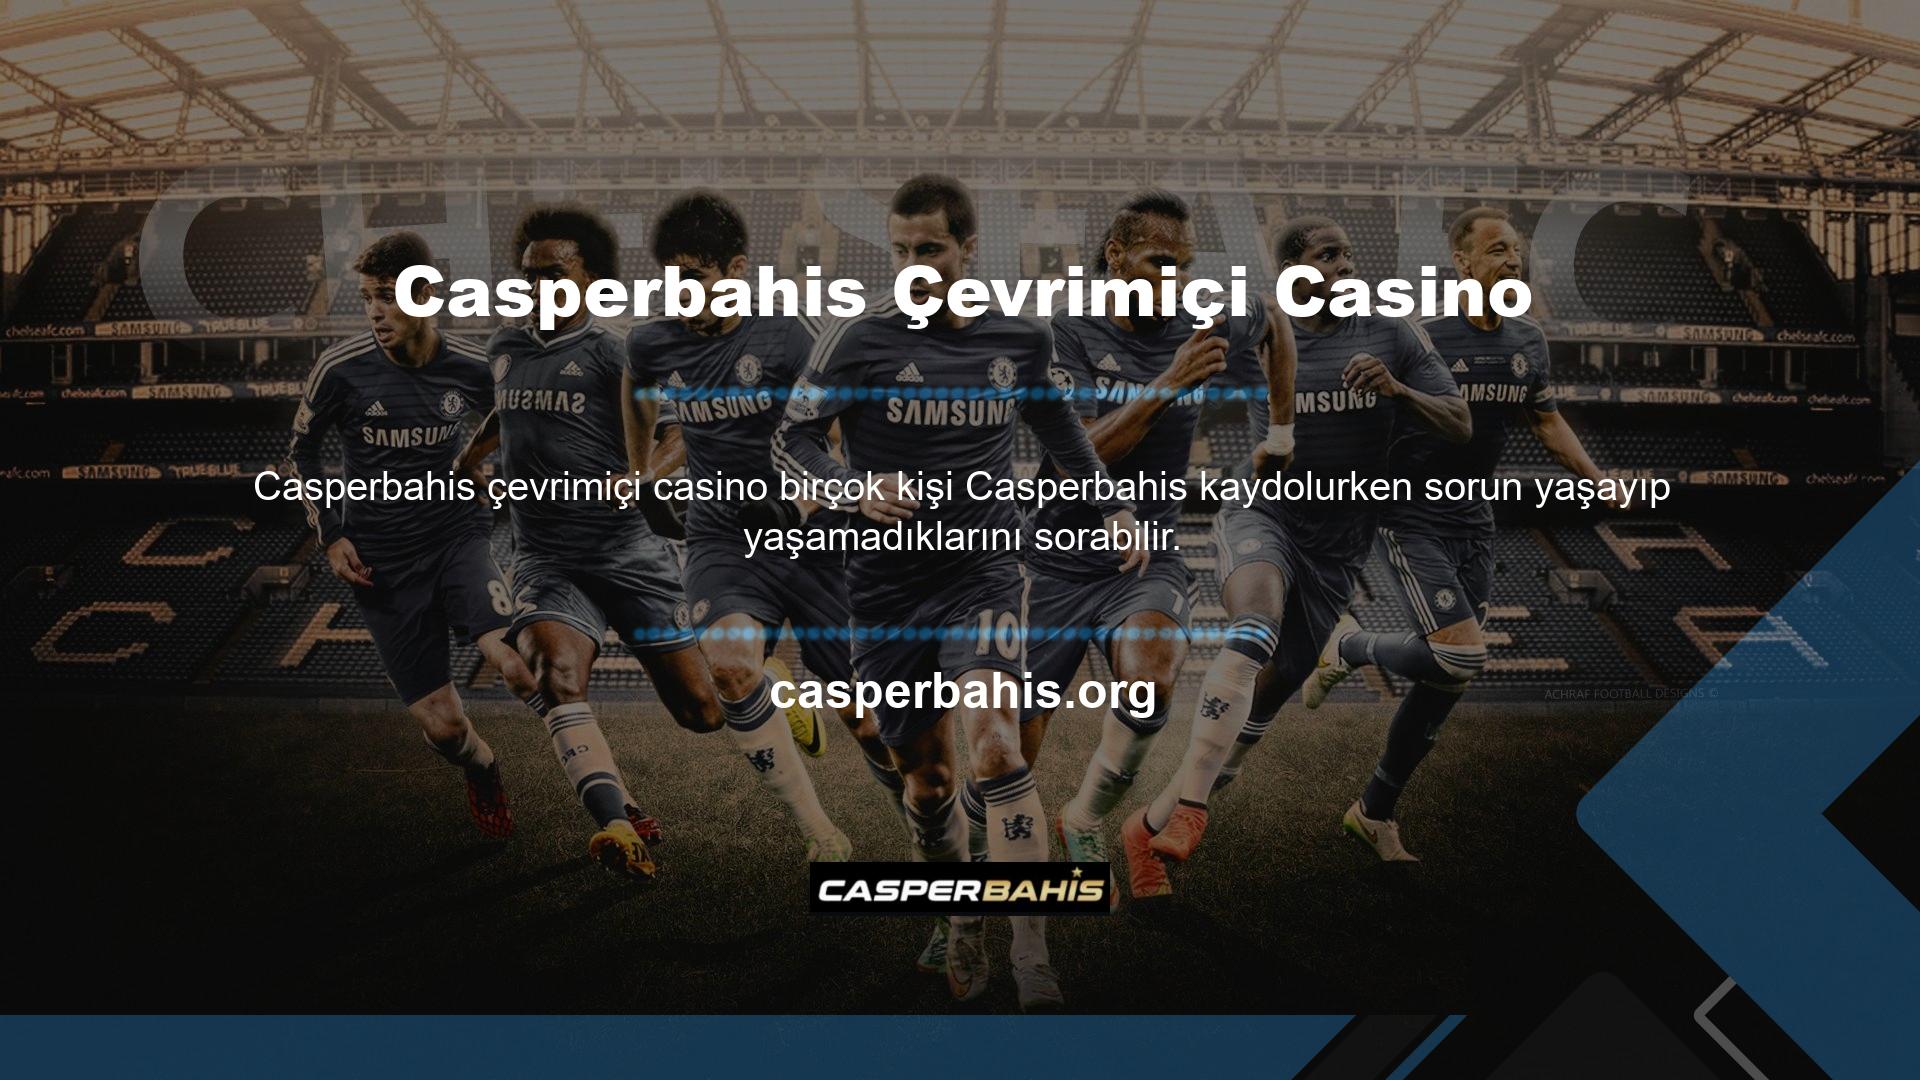 Çevrimiçi casino dünyasındaki hemen hemen her web sitesini ziyaret ettiğinizde, Casperbahis çevrimiçi casino bazı sorunların ortaya çıkabileceğini bilmelisiniz